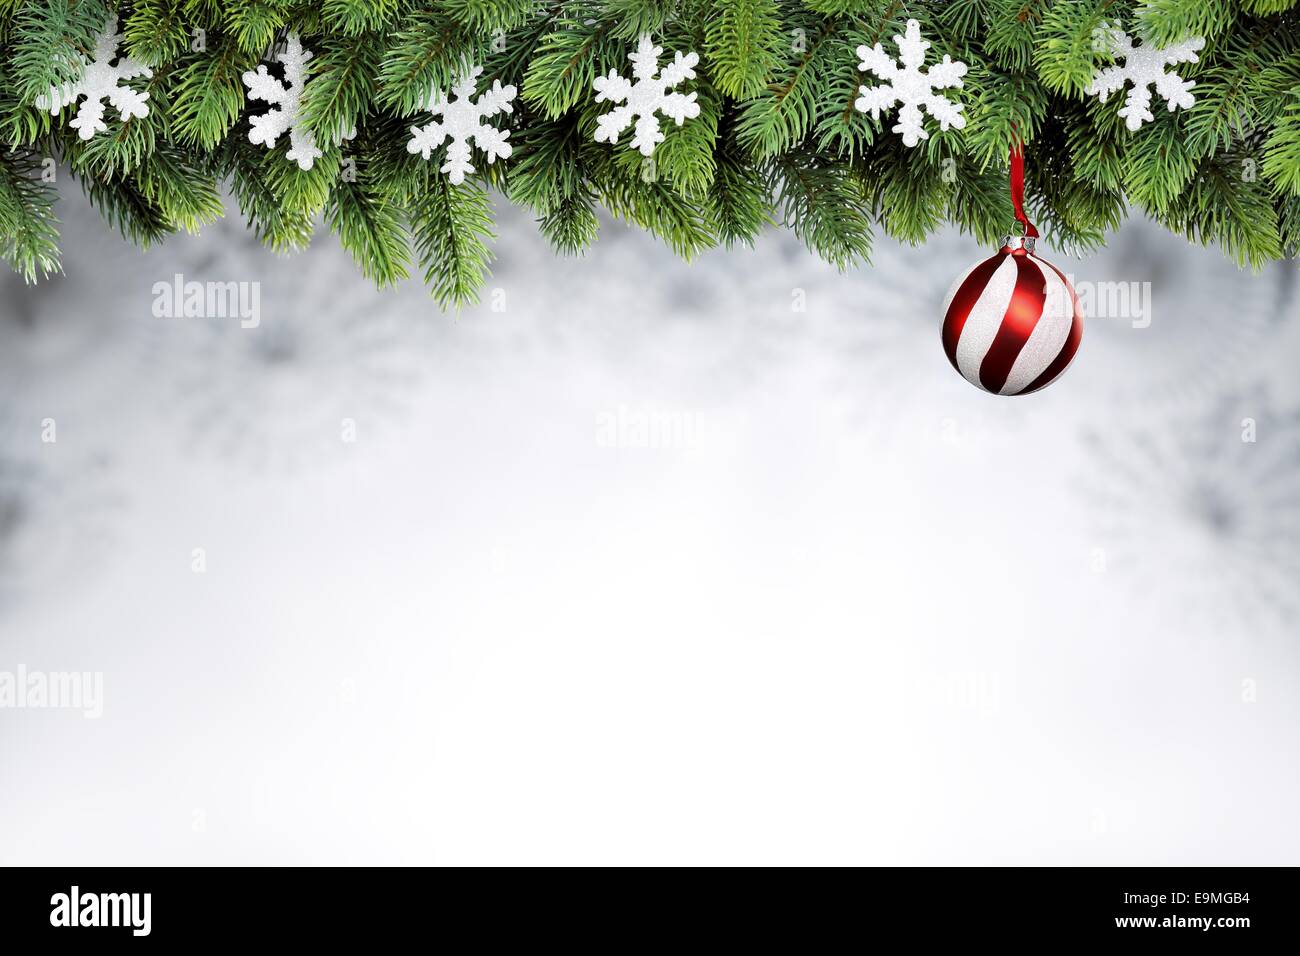 Christmas ball and snowflakes hanging on fir tree Stock Photo